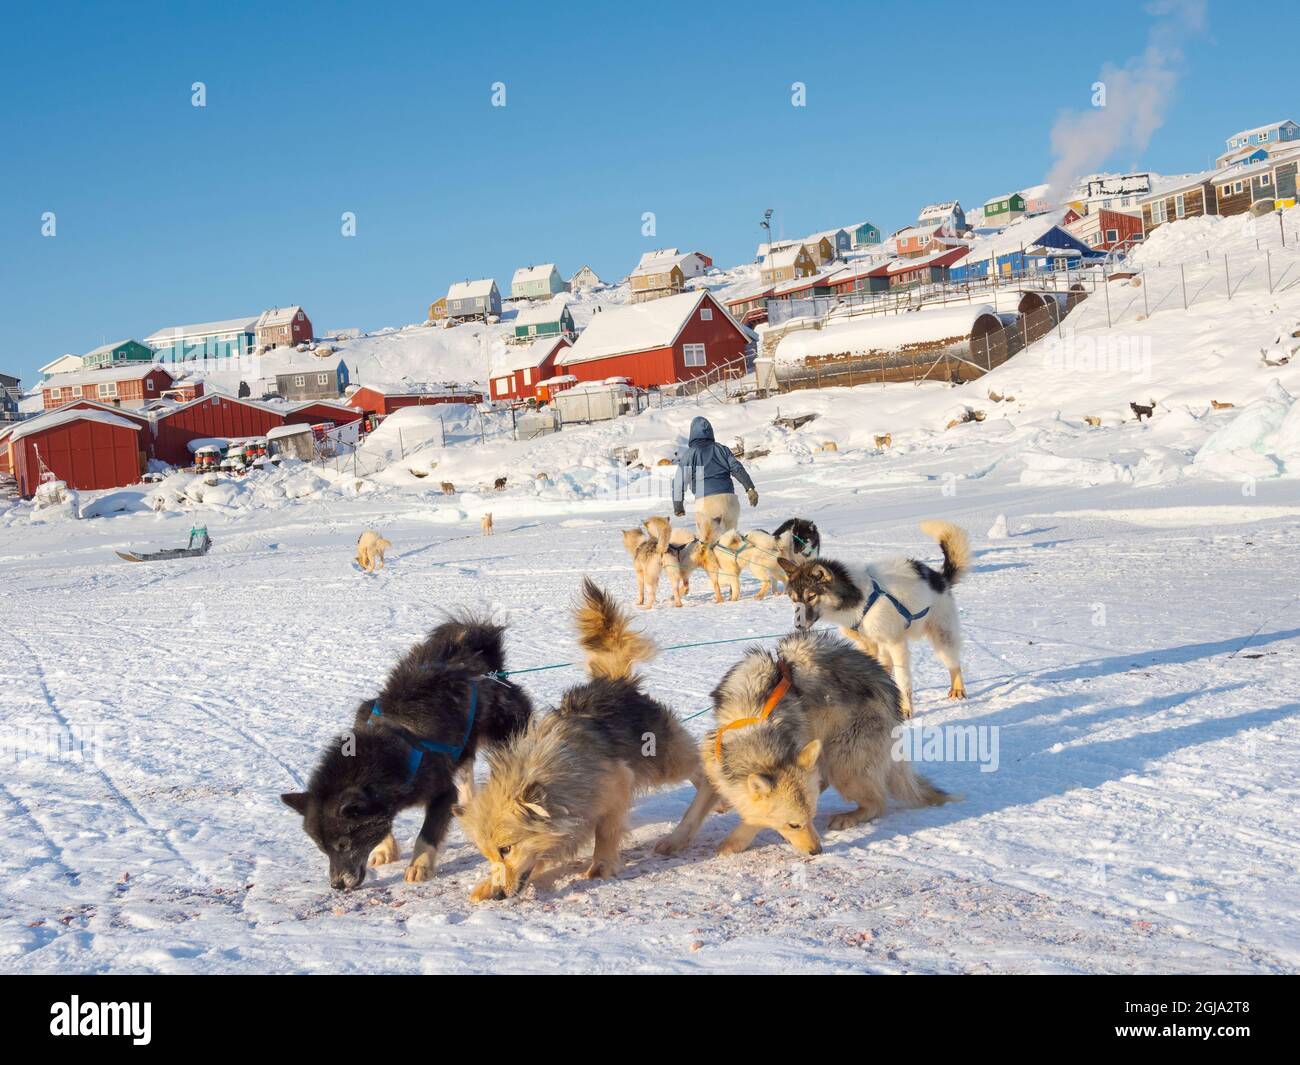 Exploitation des chiens de traîneau. Le chasseur porte des pantalons et des bottes traditionnels en fourrure d'ours polaire. Le vill traditionnel et éloigné des Inuits groenlandais Banque D'Images